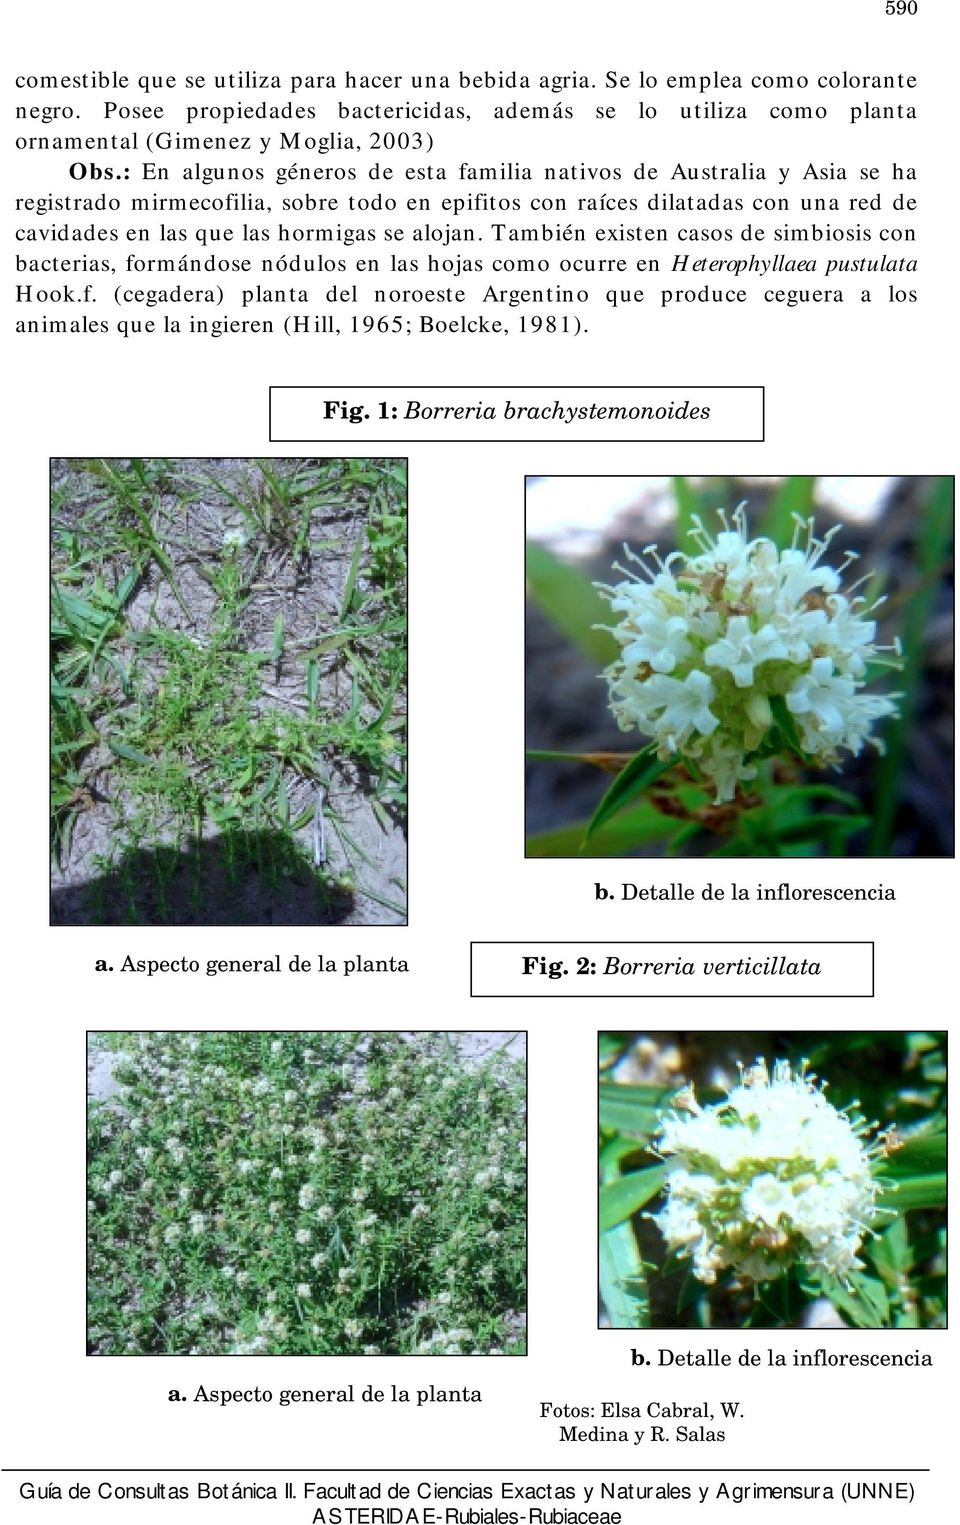 También existen casos de simbiosis con bacterias, formándose nódulos en las hojas como ocurre en Heterophyllaea pustulata Hook.f. (cegadera) planta del noroeste Argentino que produce ceguera a los animales que la ingieren (Hill, 1965; Boelcke, 1981).